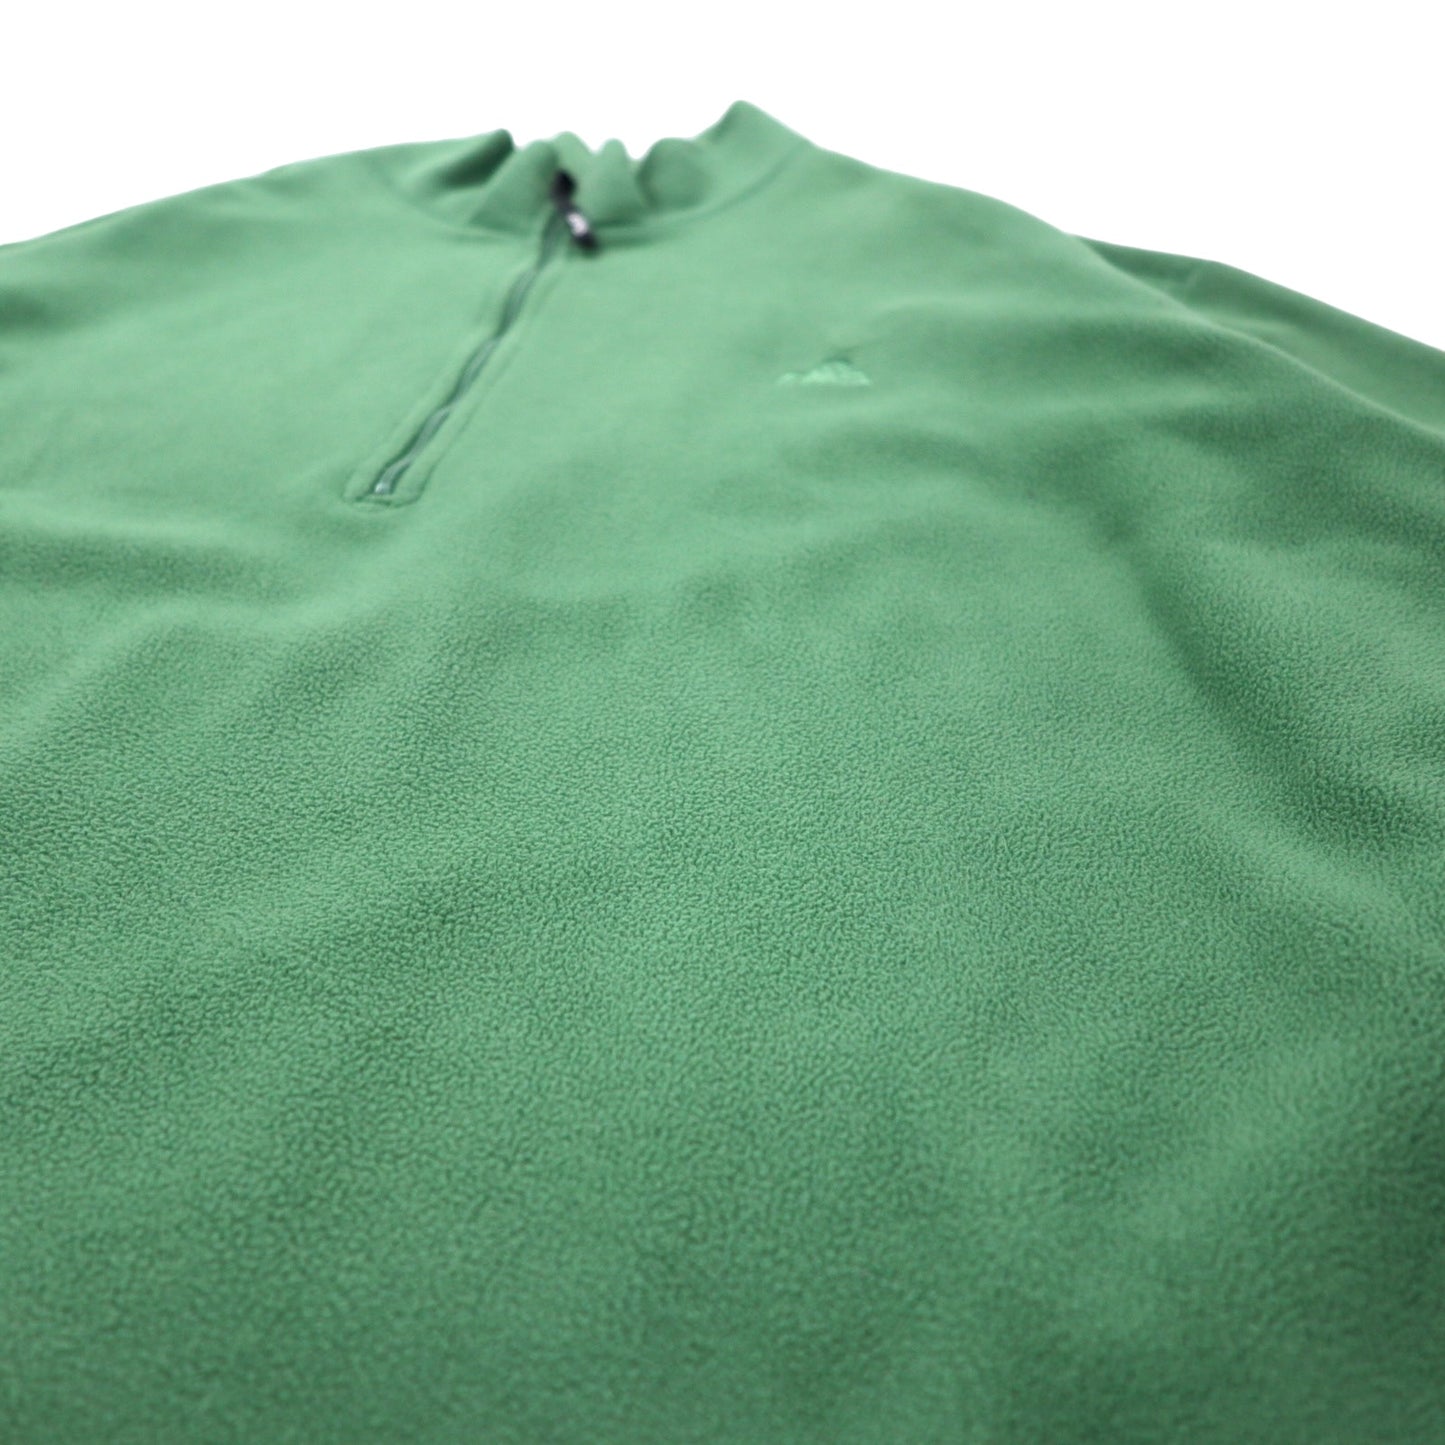 EMS ハーフジップ フリースジャケット XL グリーン ポリエステル ワンポイントロゴ刺繍 ビッグサイズ